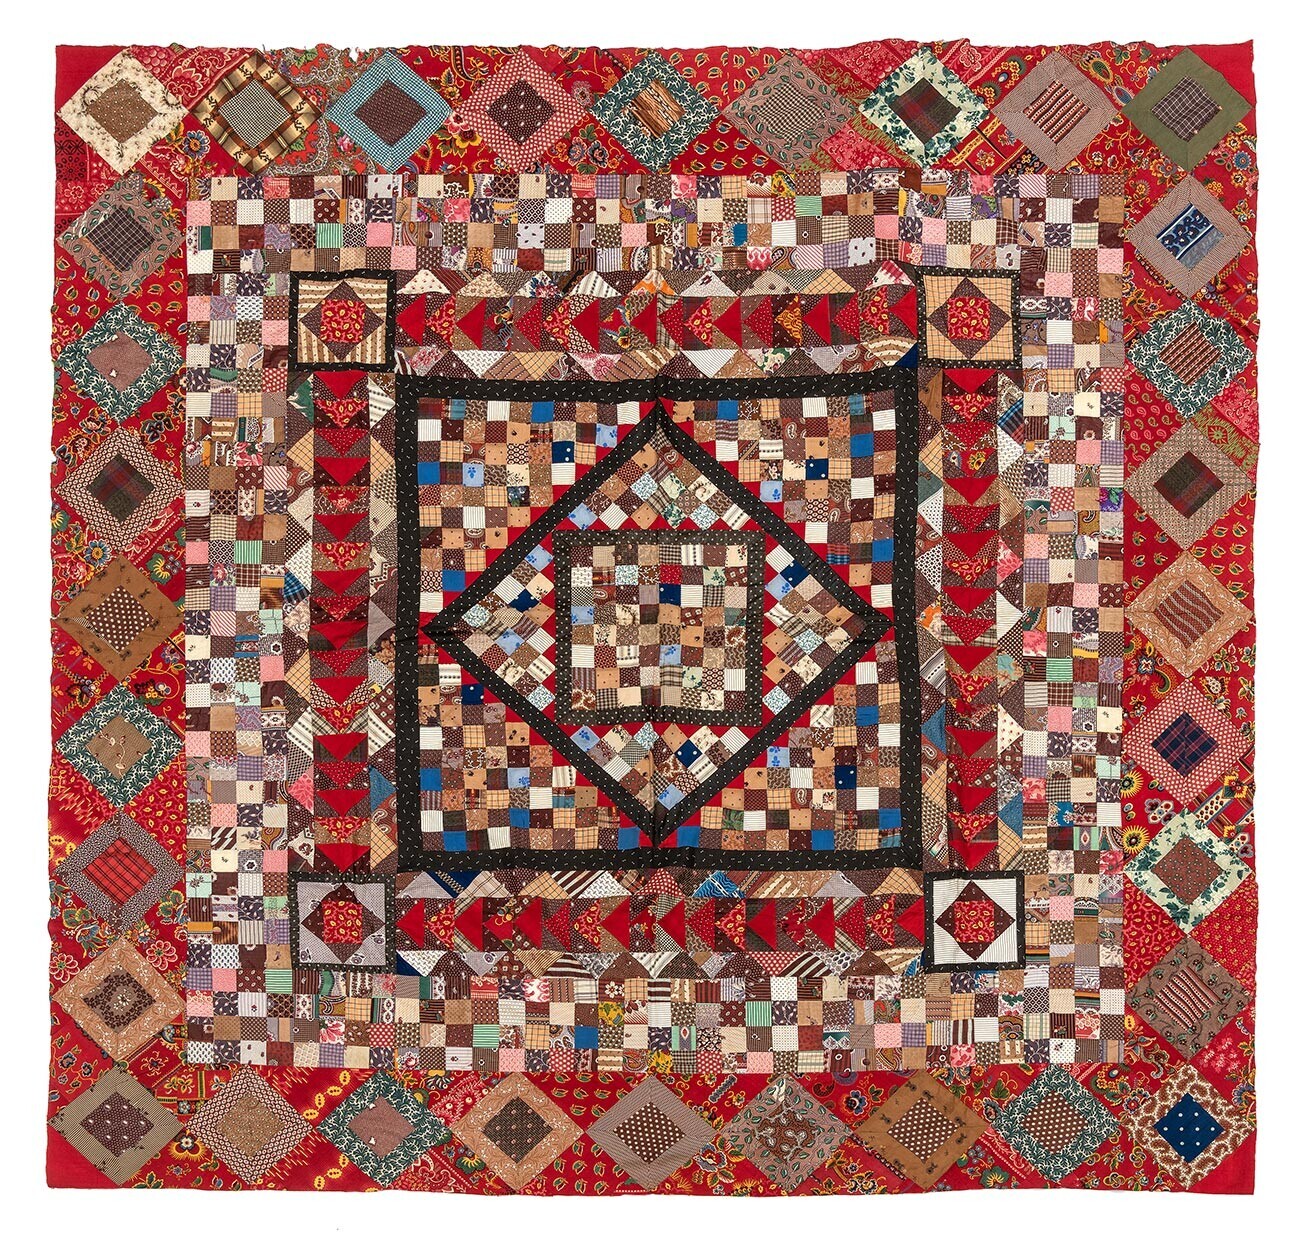 Selimut kain perca (patchwork). Akhir abad ke-19. Kazan